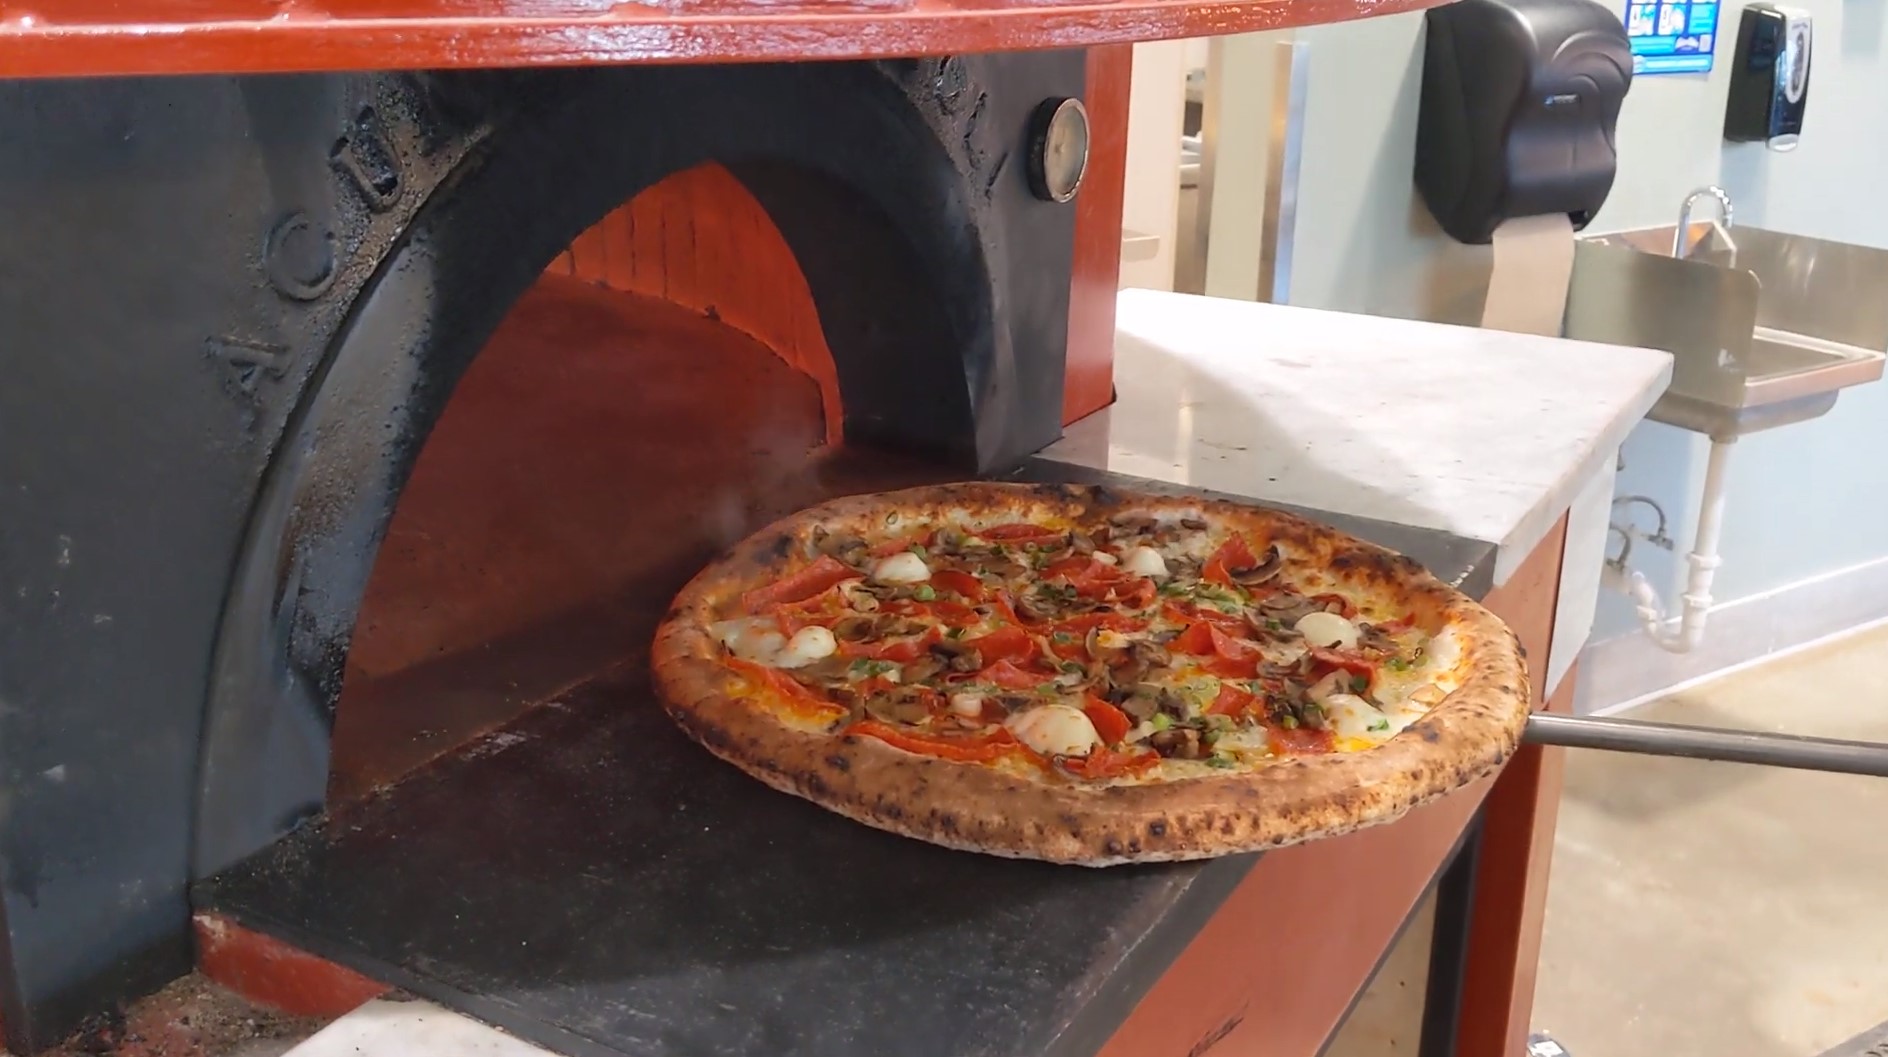 Capella Pizzeria is open in Trussville